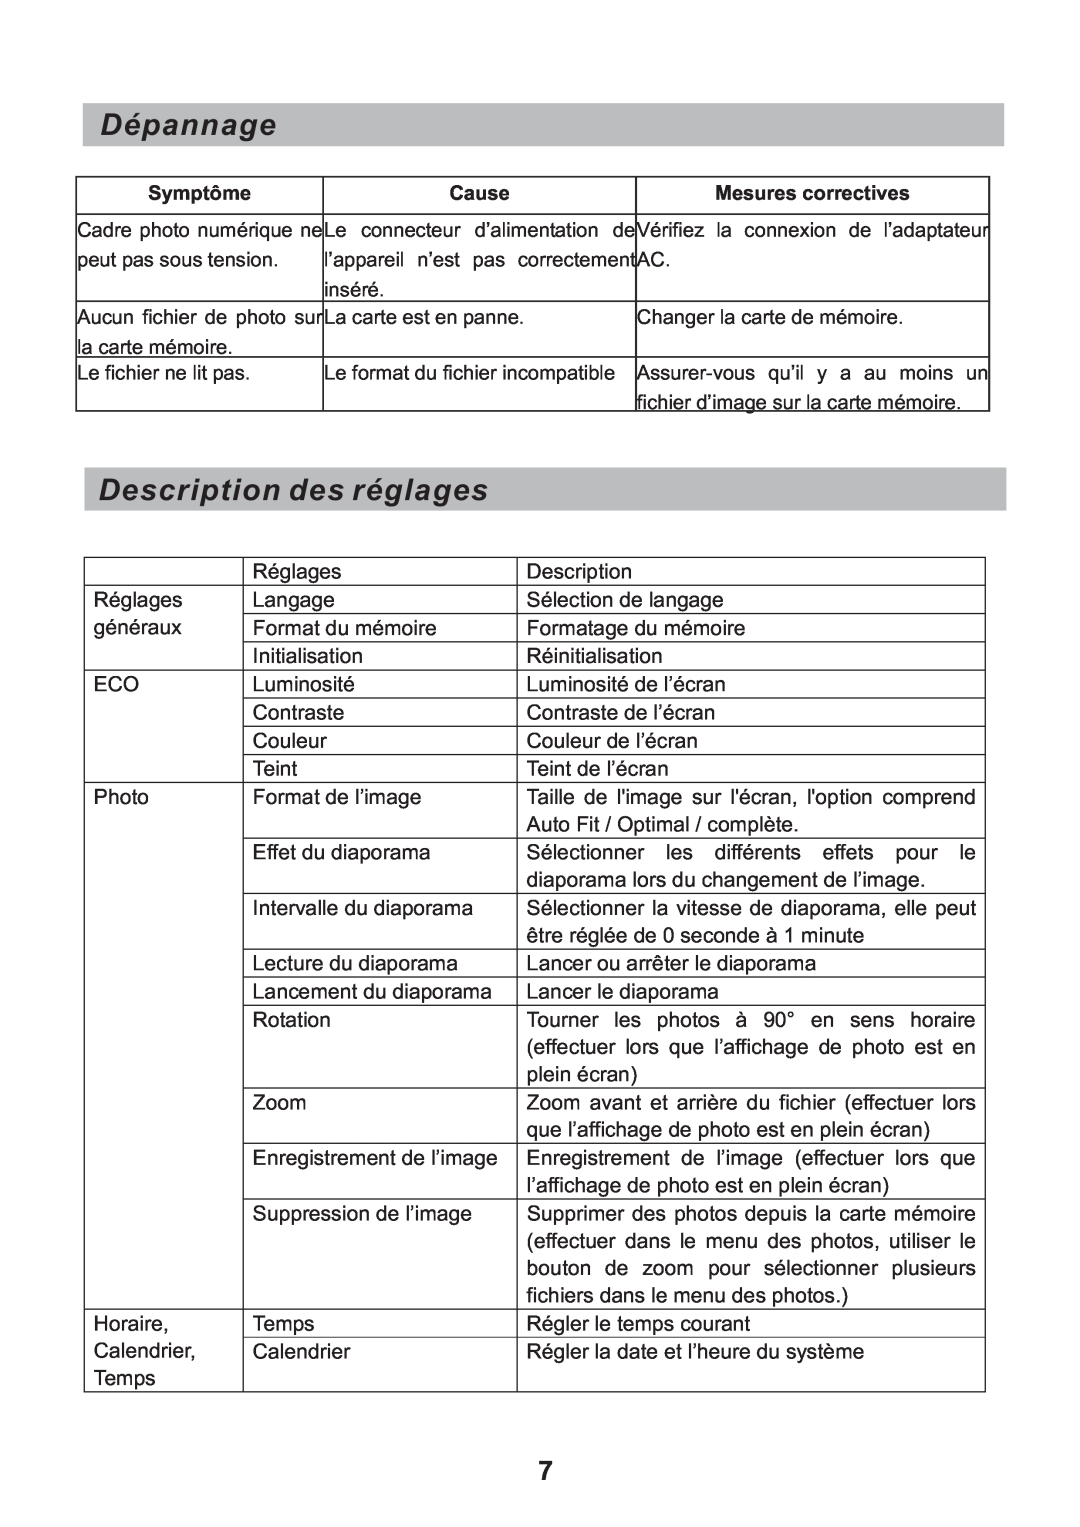 Sylvania SDPF751B user manual Dépannage, Description des réglages, Symptôme, Cause, Mesures correctives 